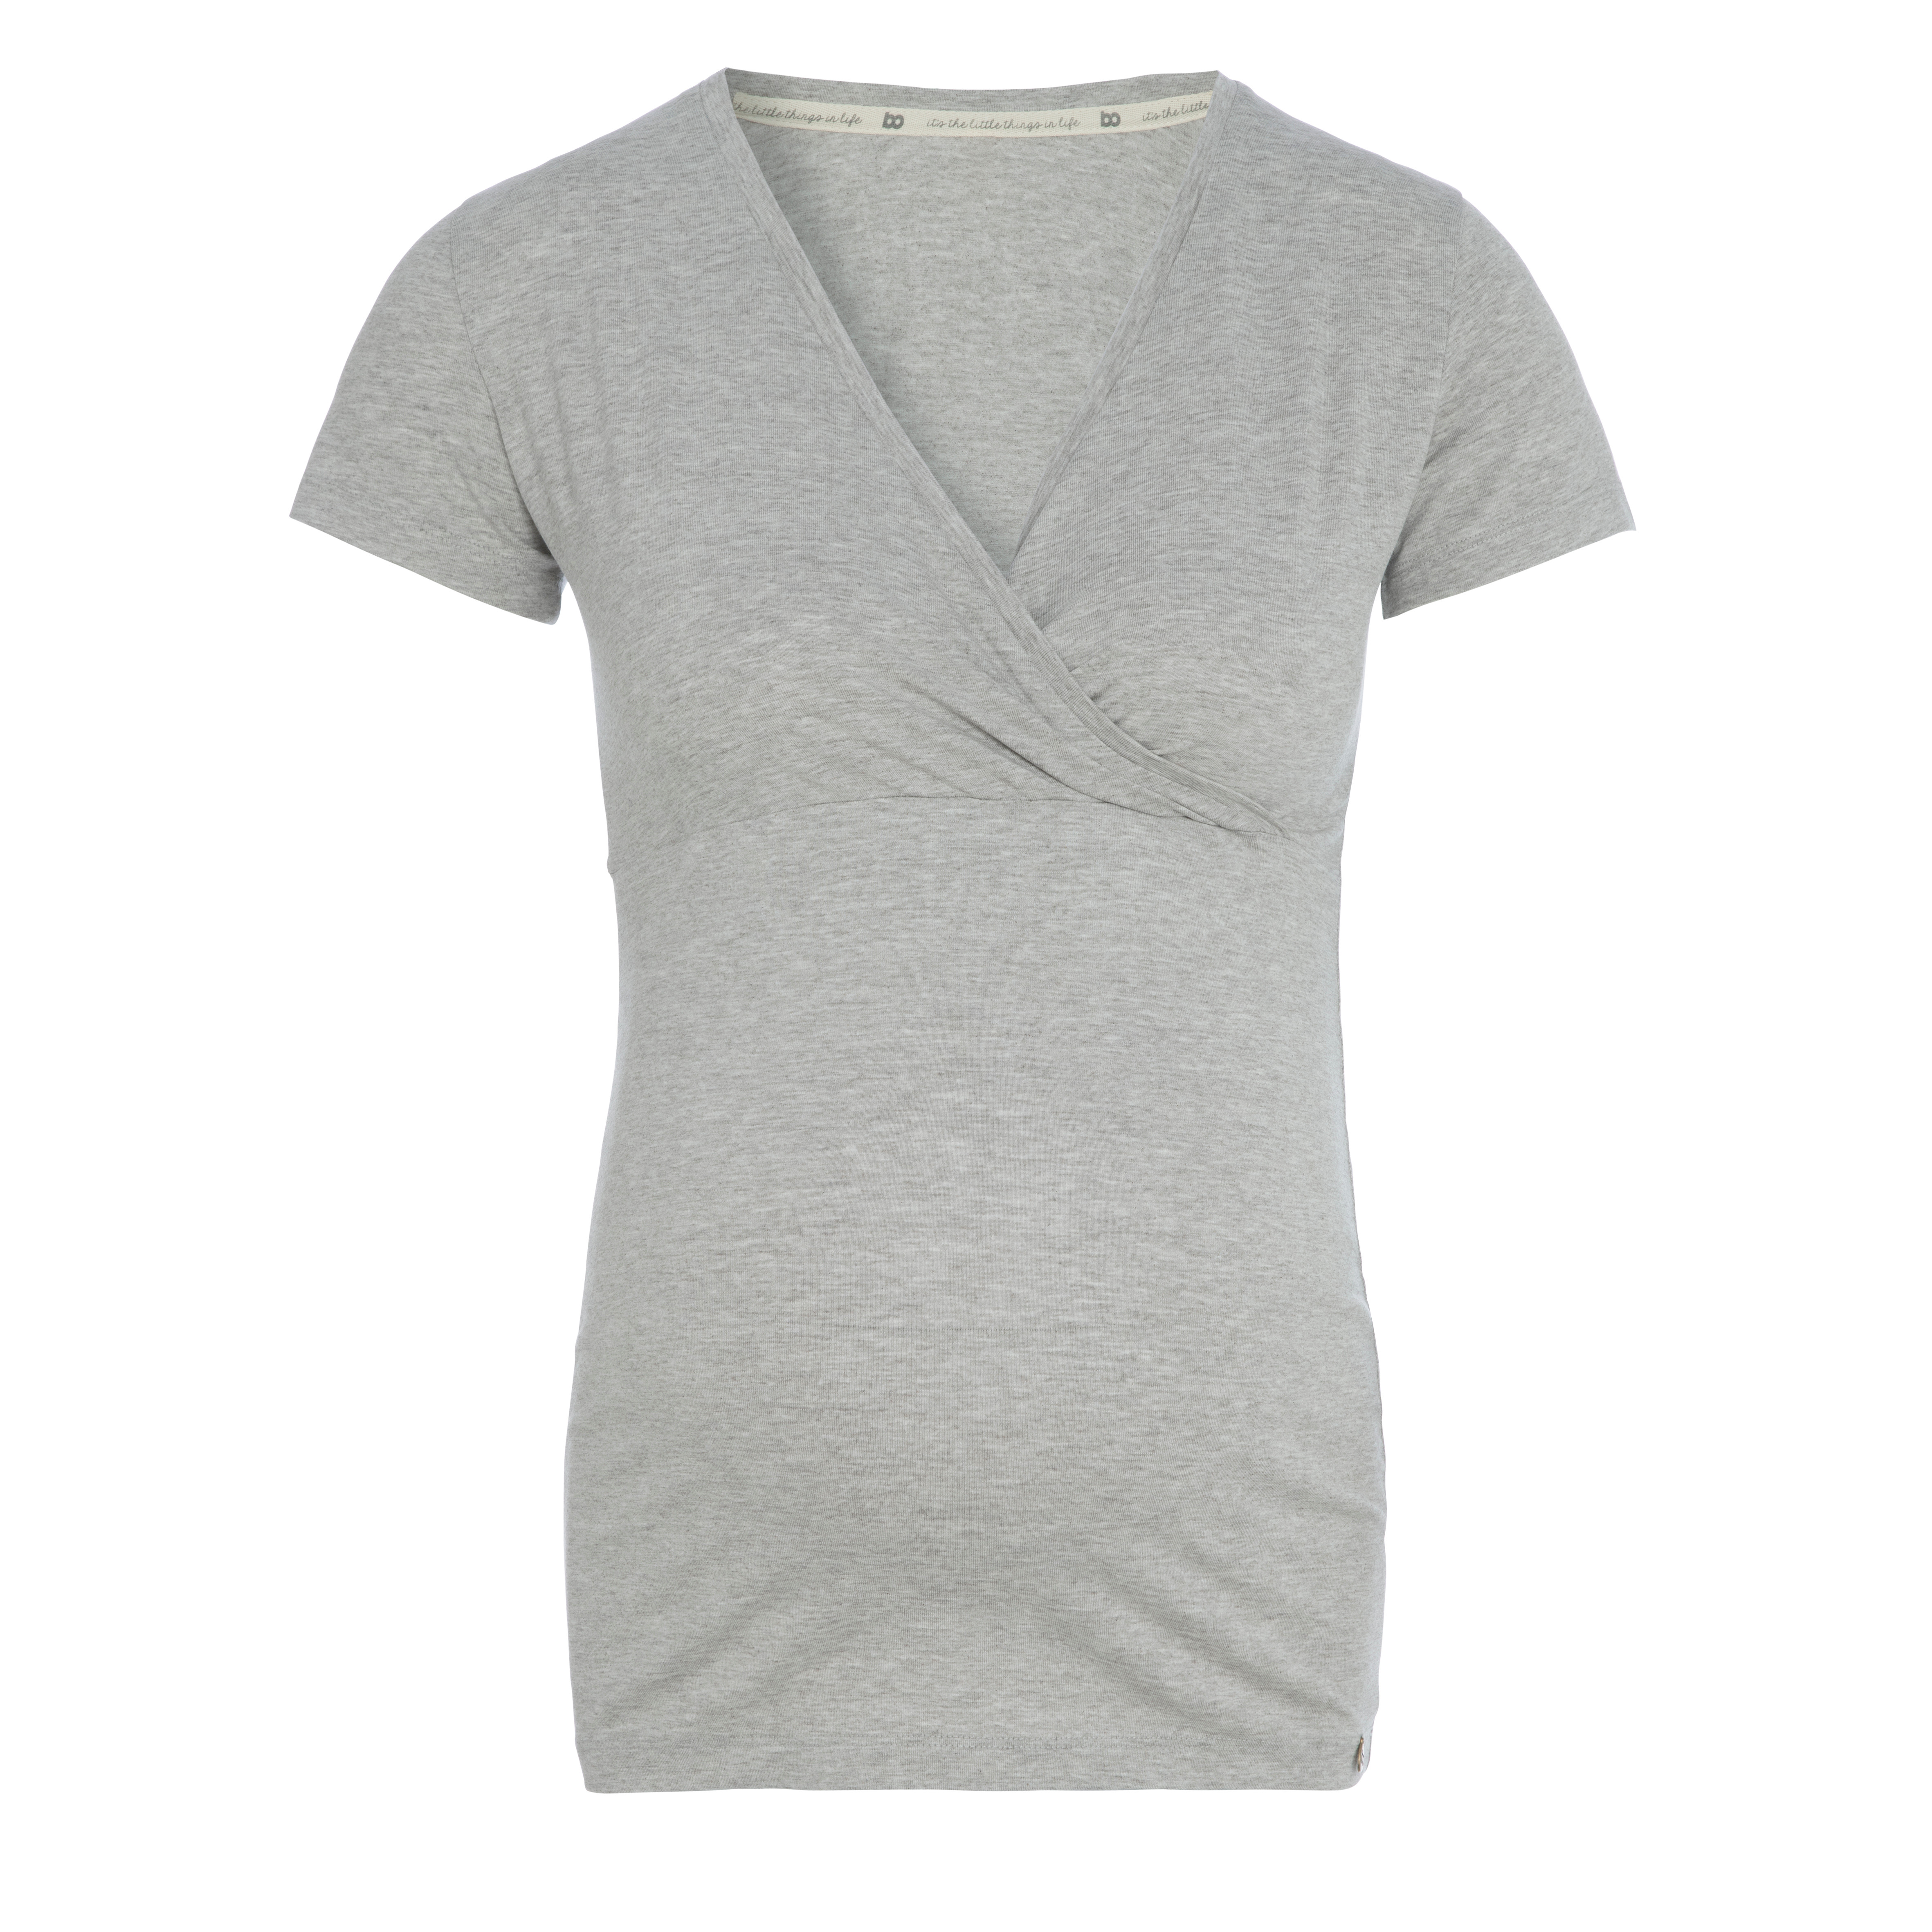 Zwangerschaps T-shirt Glow dusty grey - M - Met voedingsfunctie